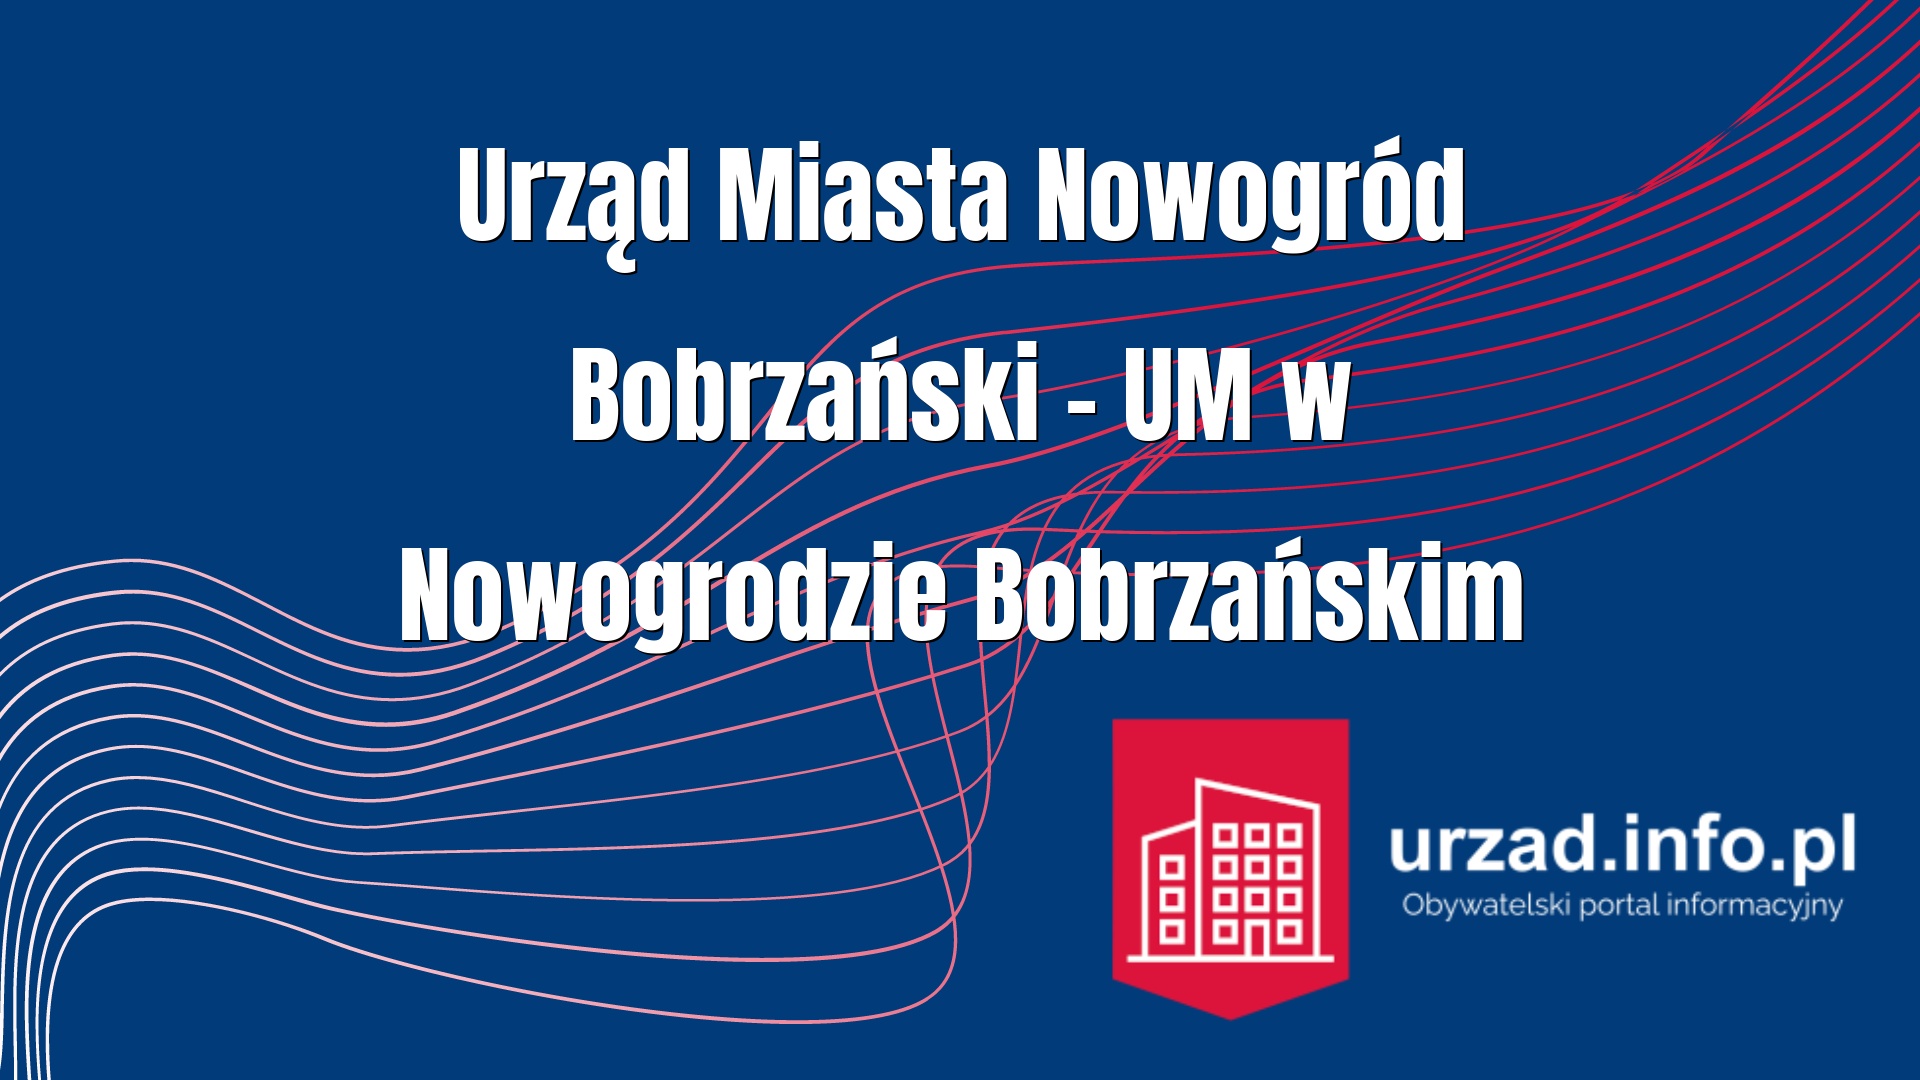 Urząd Miasta Nowogród Bobrzański – UM w Nowogrodzie Bobrzańskim